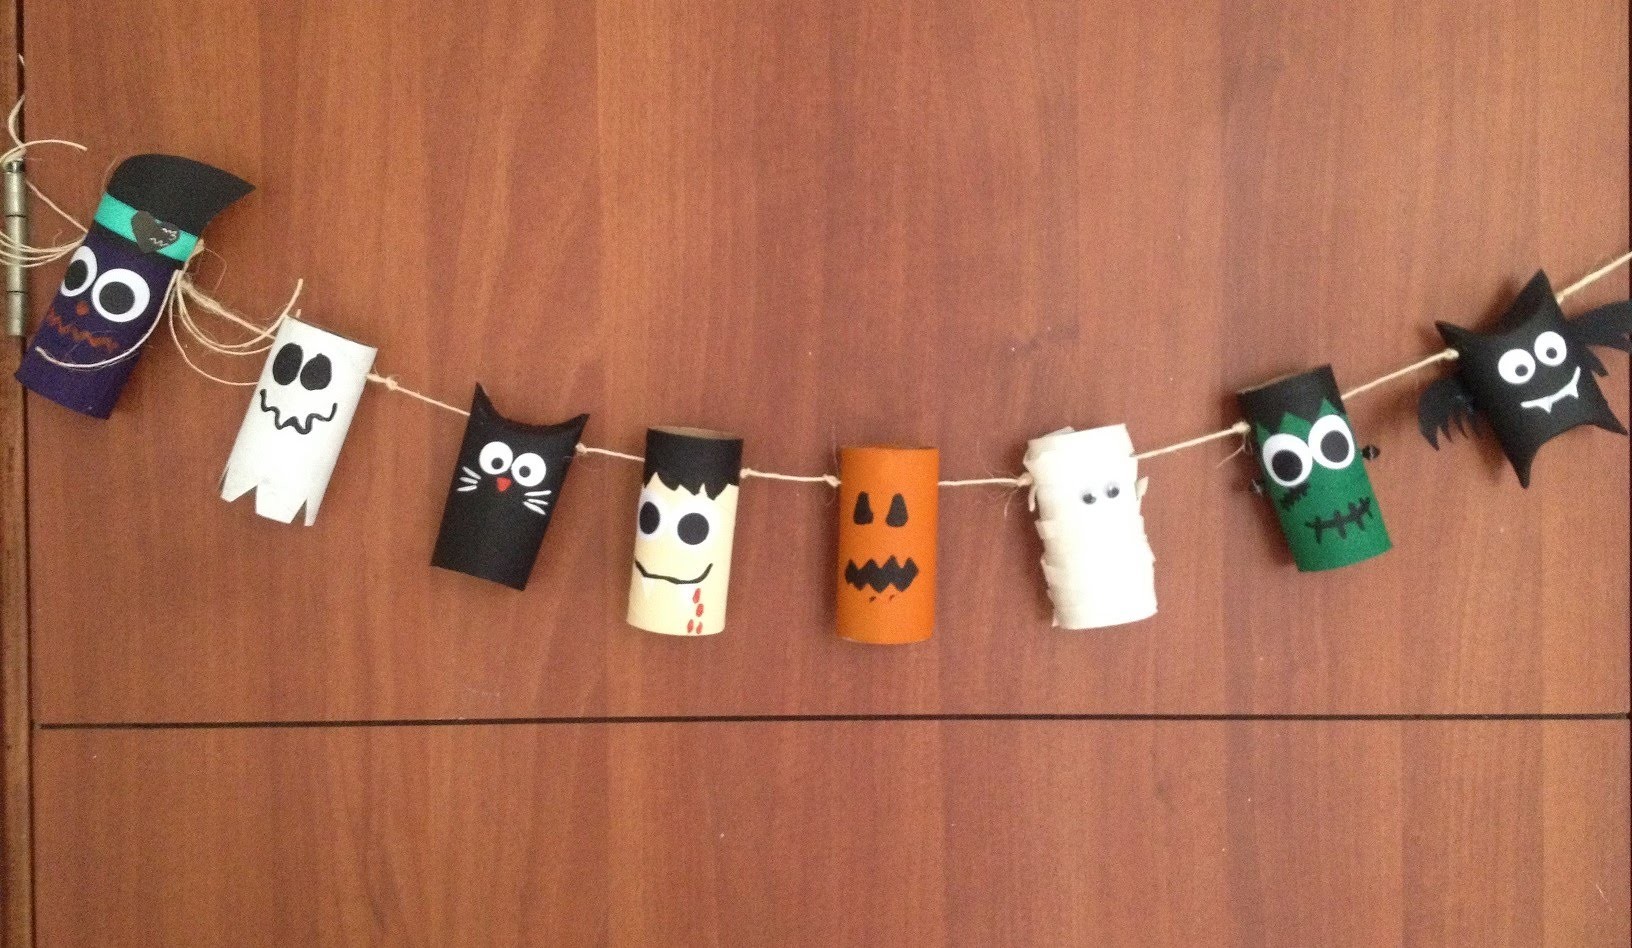 Especial de halloween: banner con rollos.tubos de papel reciclados para decorar la puerta DIY